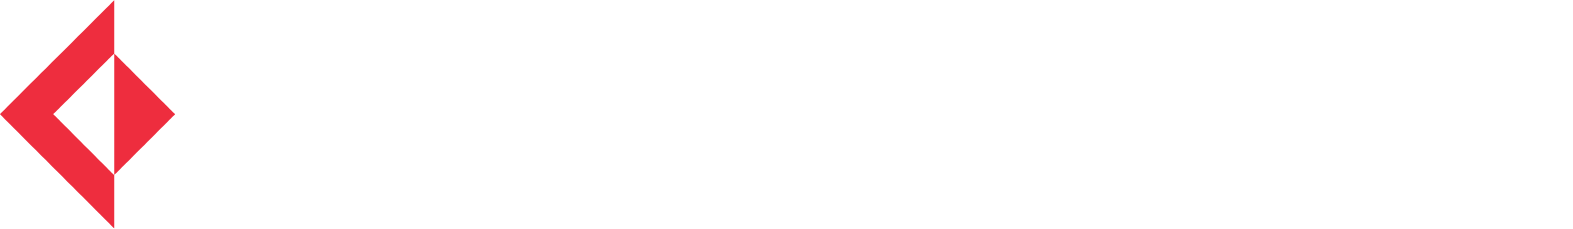 Cosmo First Logo groß für dunkle Hintergründe (transparentes PNG)